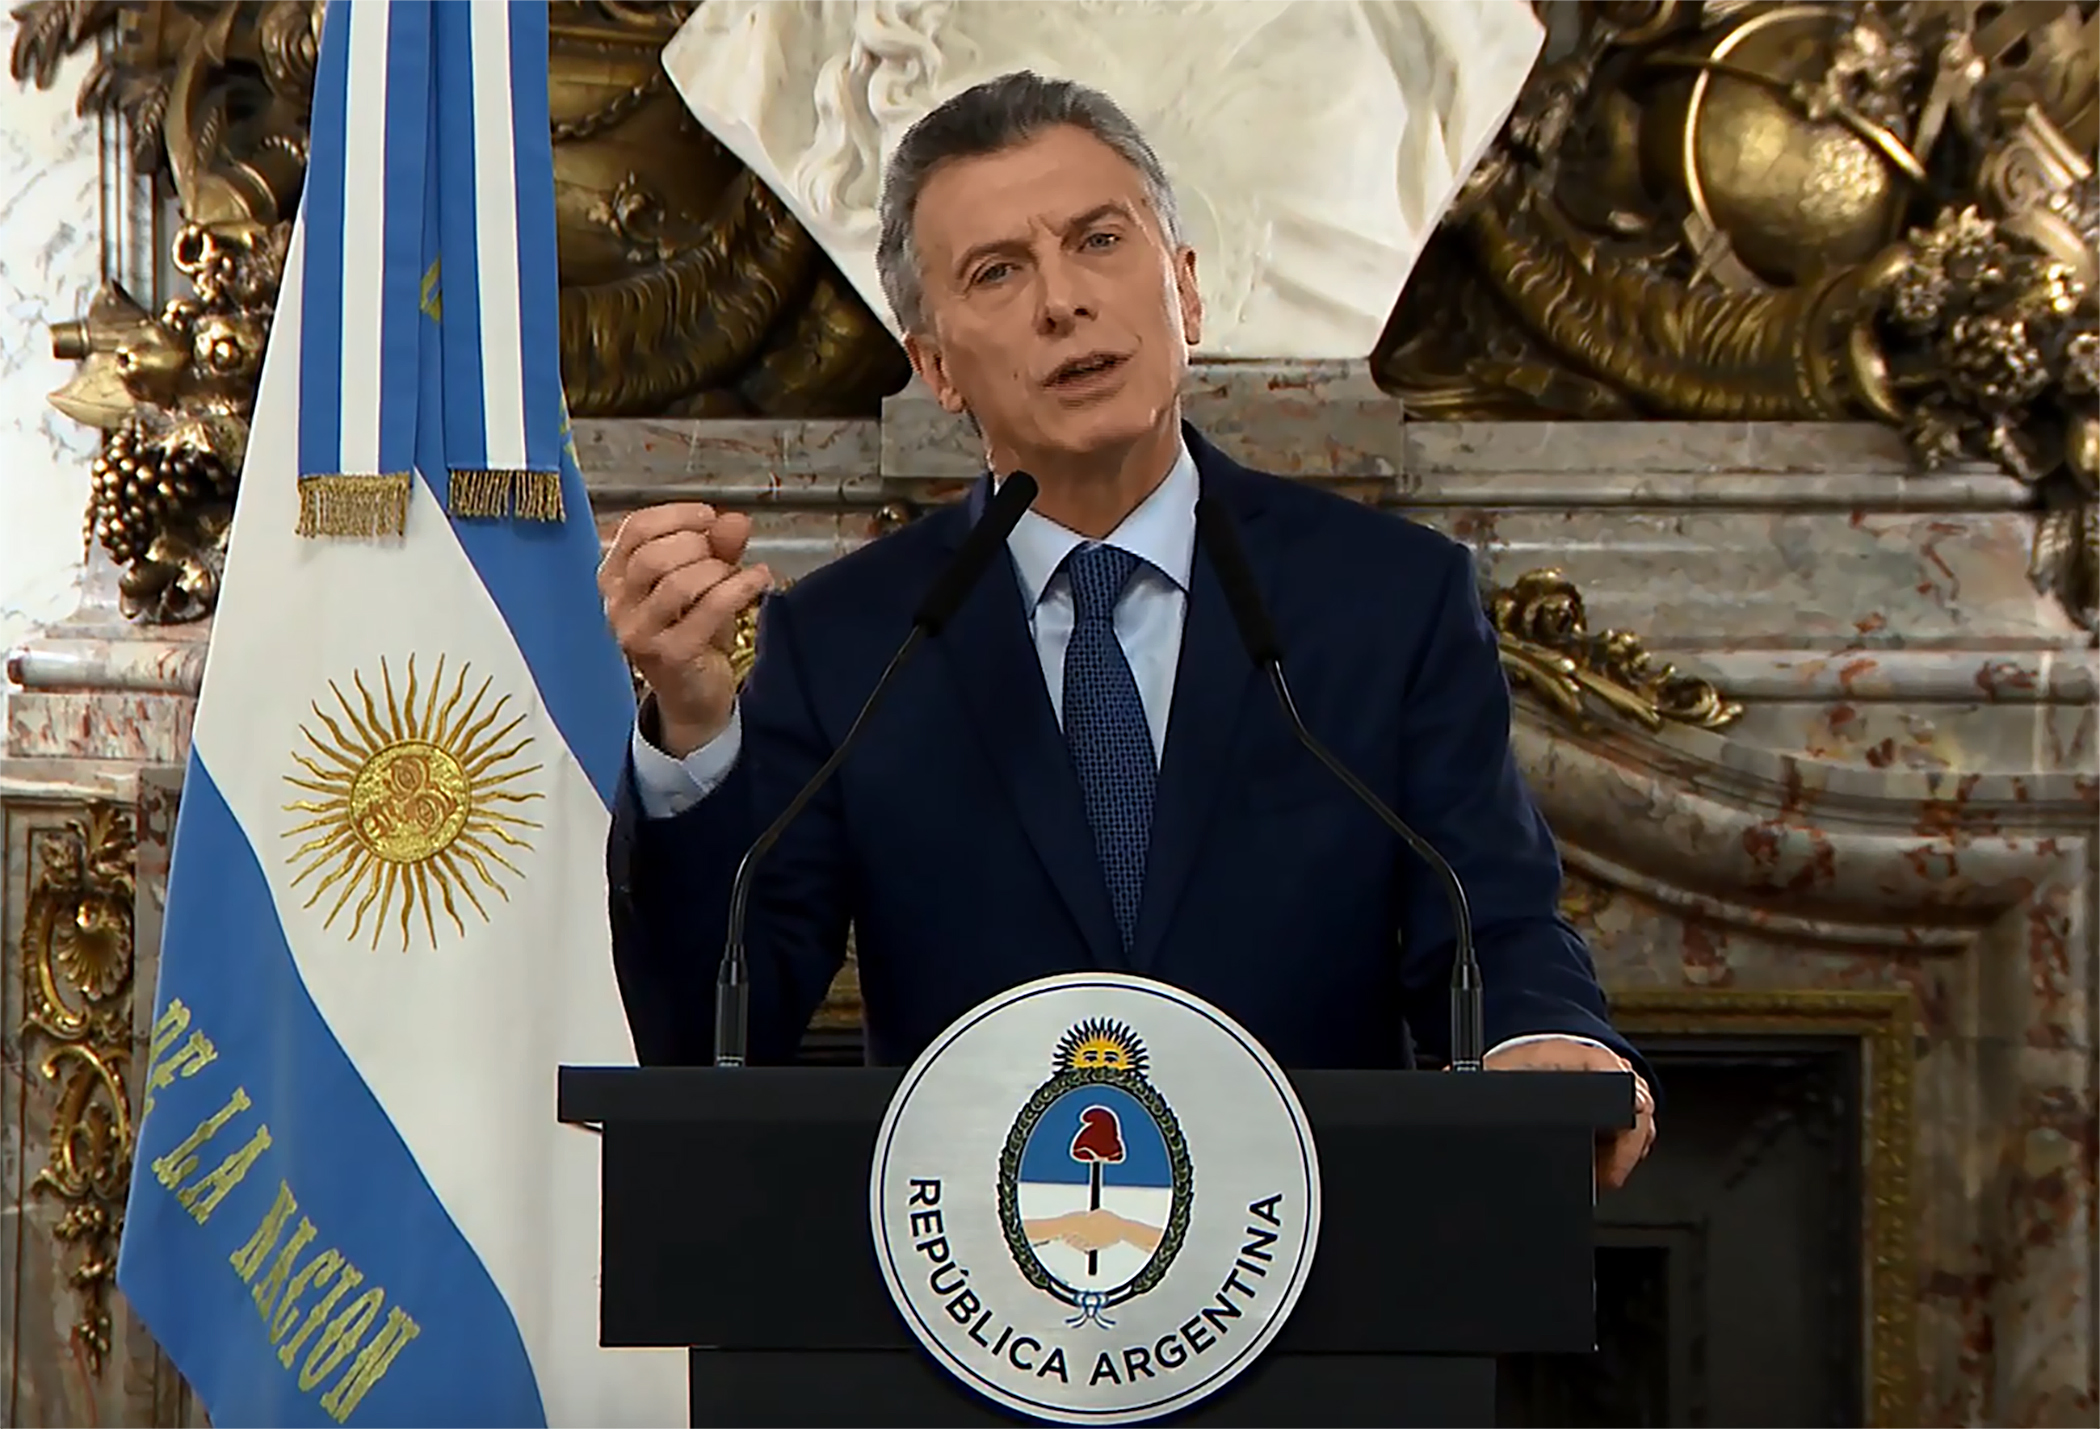 Indulnak az argentin megszorítások, rögtön megszüntetik a minisztériumok felét